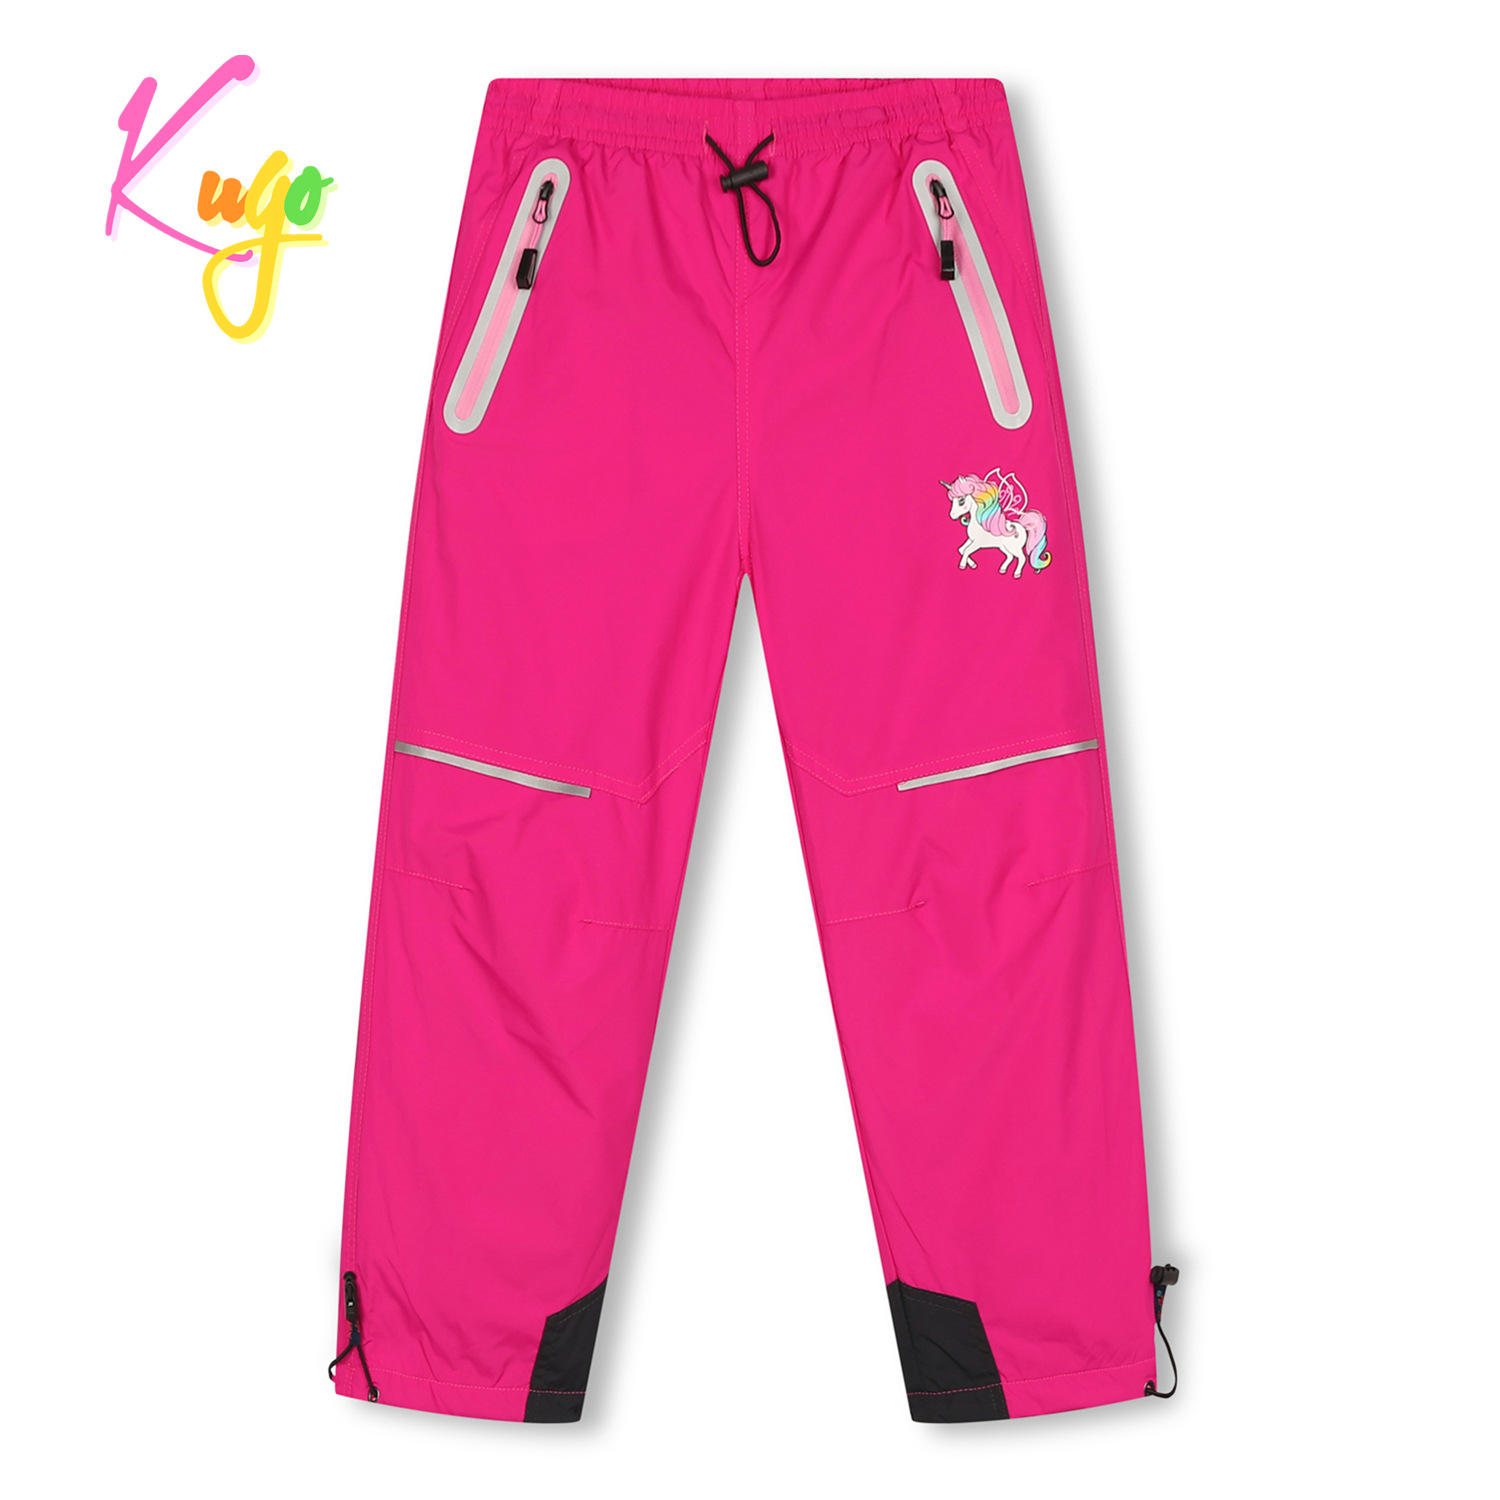 Dívčí šusťákové kalhoty, zateplené - KUGO DK7120, růžová Barva: Růžová, Velikost: 98